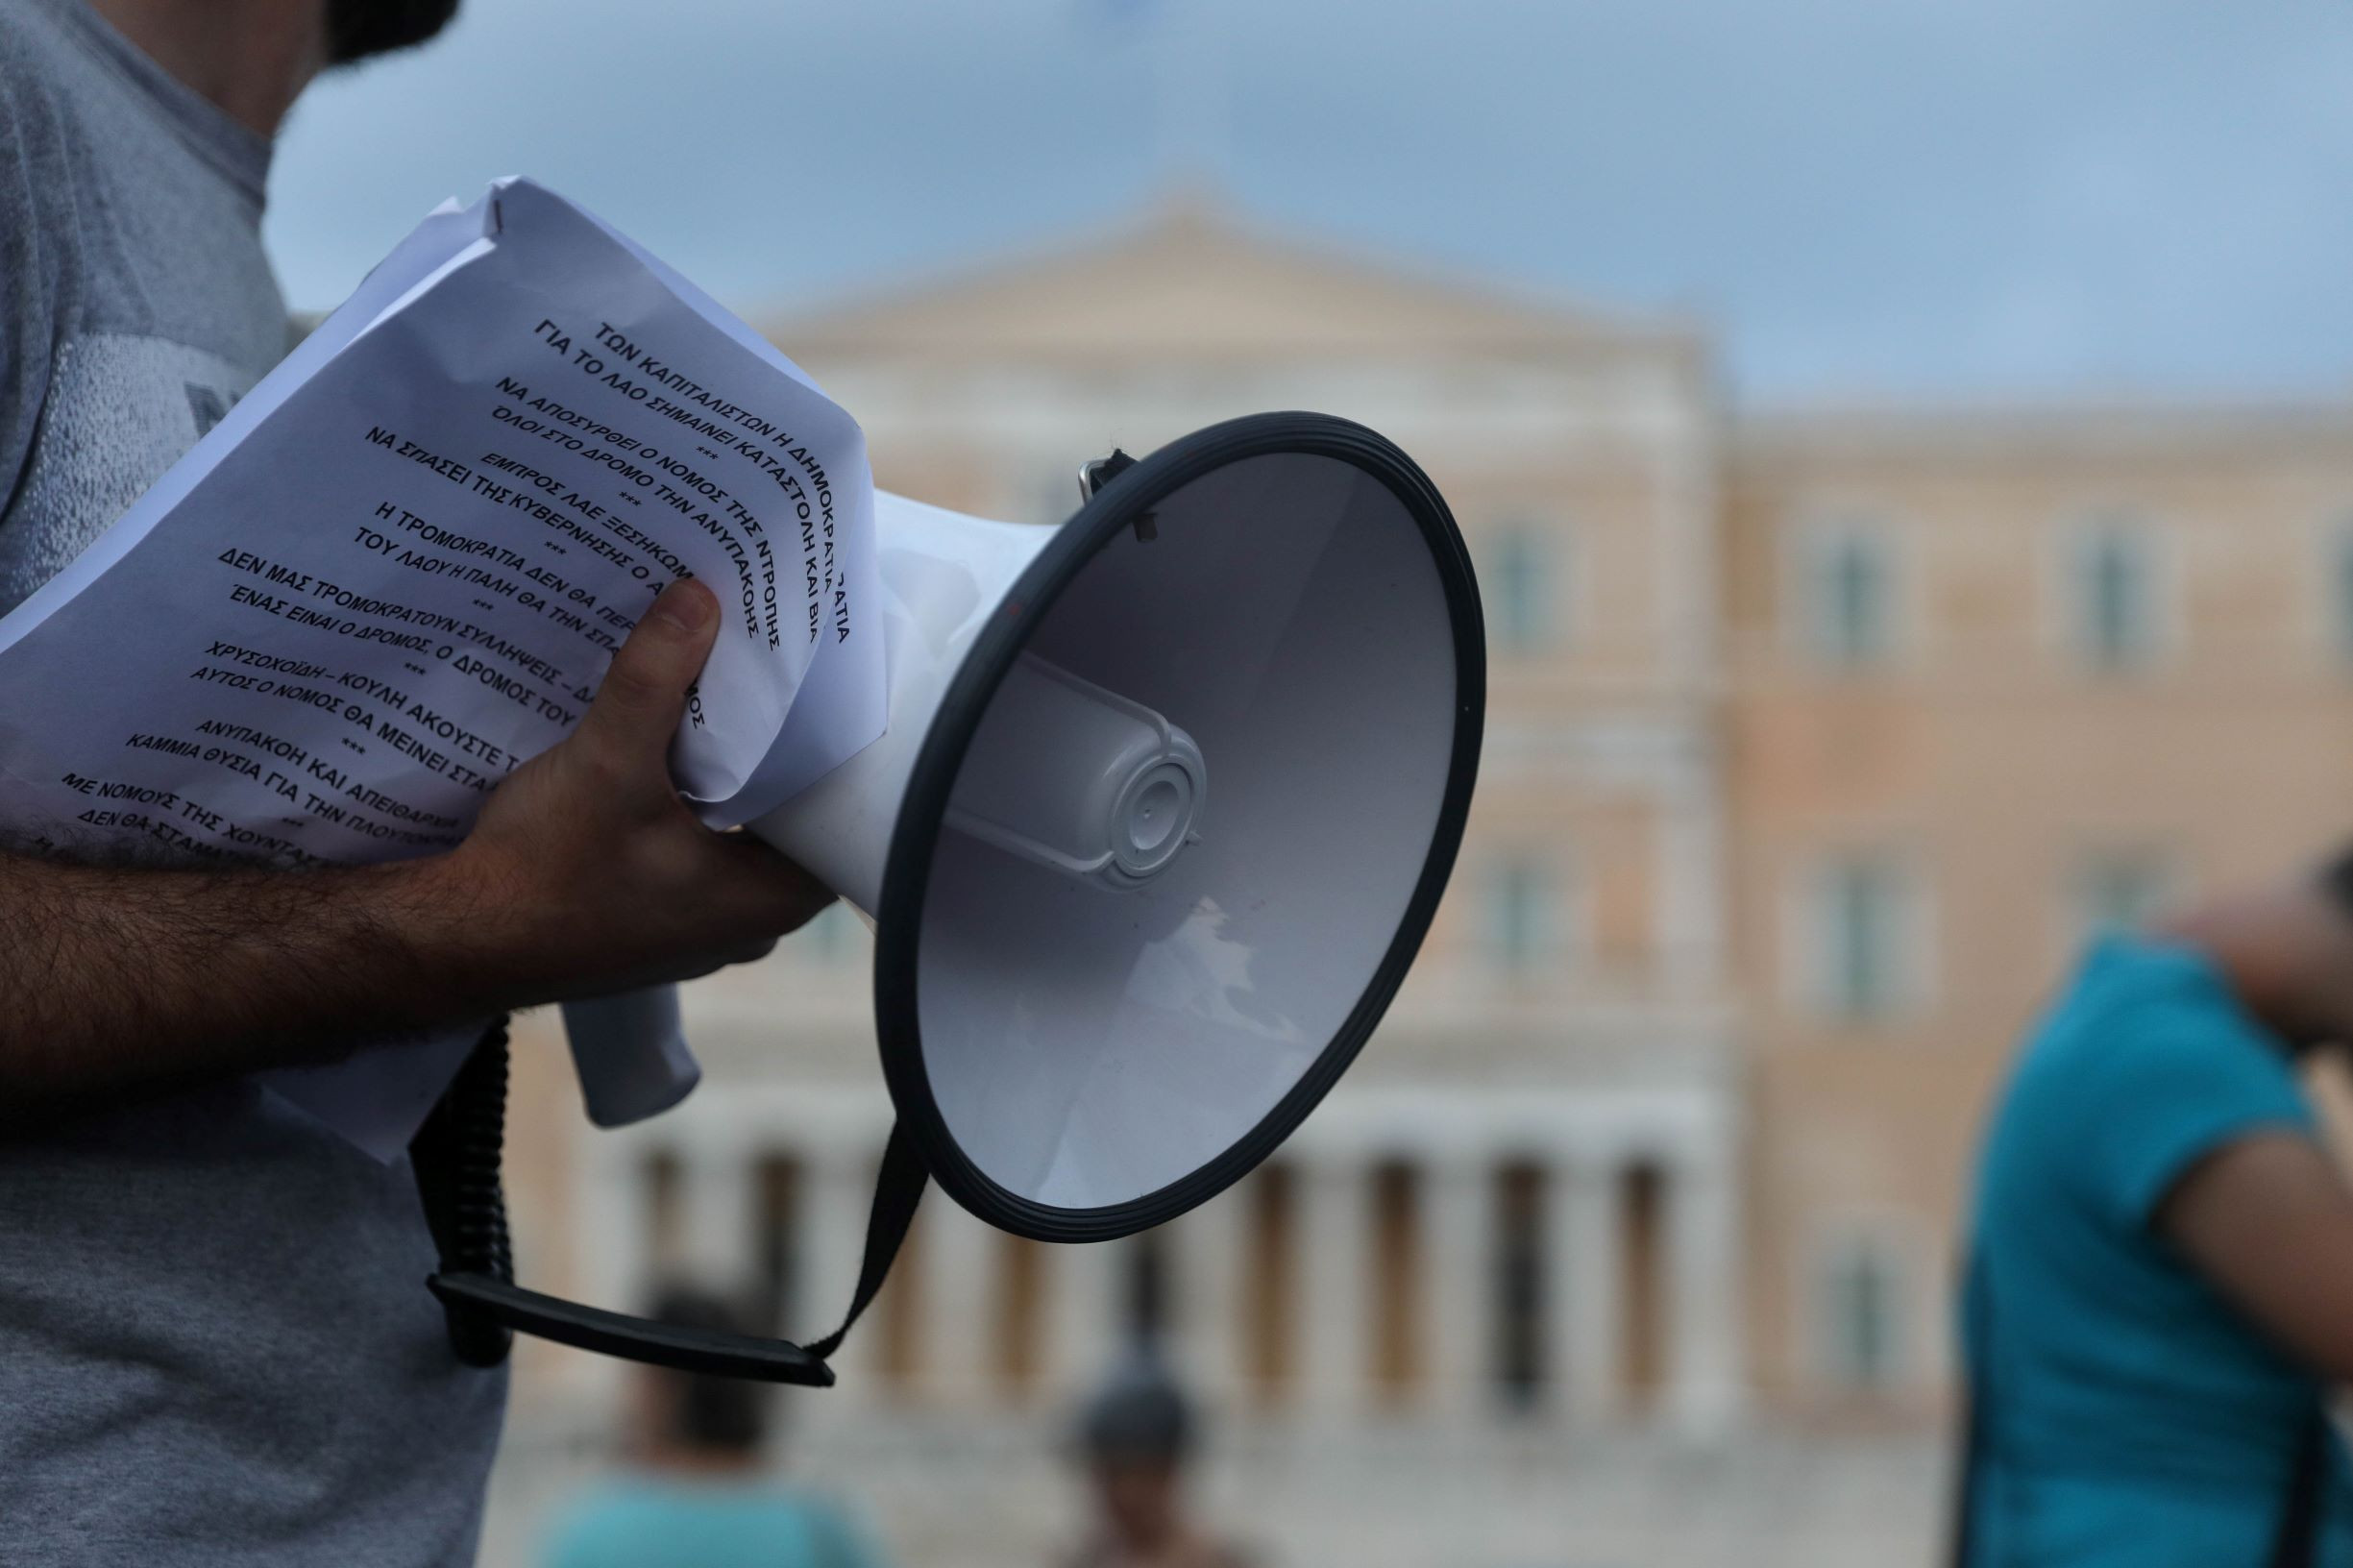 Ομάδα Νομικής Βοήθειας για το Νομοσχέδιο για τις Διαδηλώσεις: Επανάληψη των αντισυνταγματικών διατάξεων χουντικού νόμου